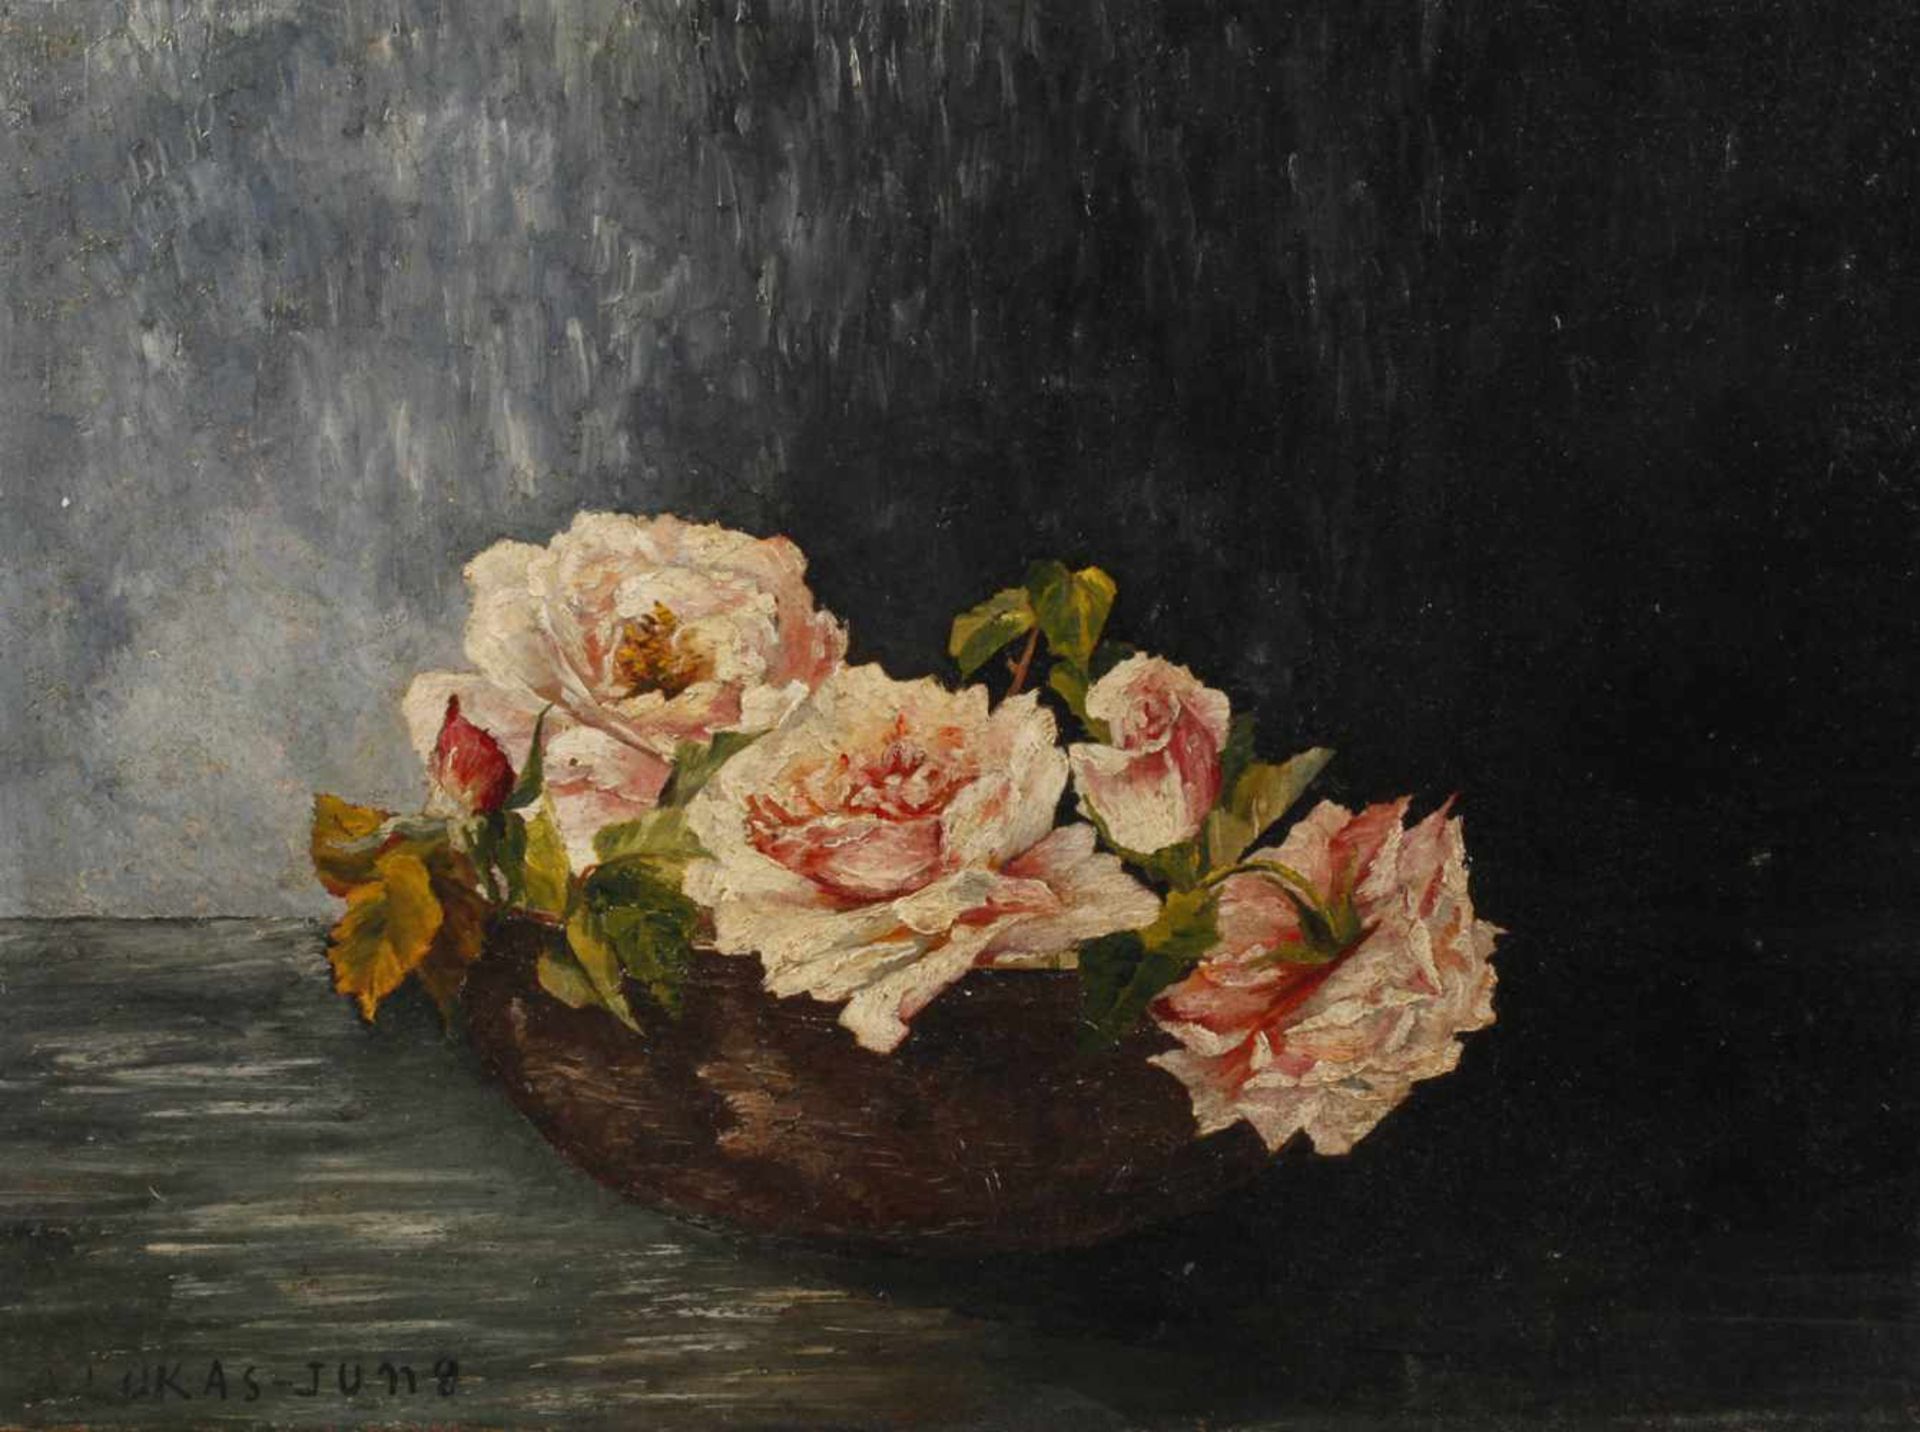 A. Lukas-Jung, Rosenstilllebenzart rosafarbene Rosenblüten, in einer Schale vor dunklem Grund